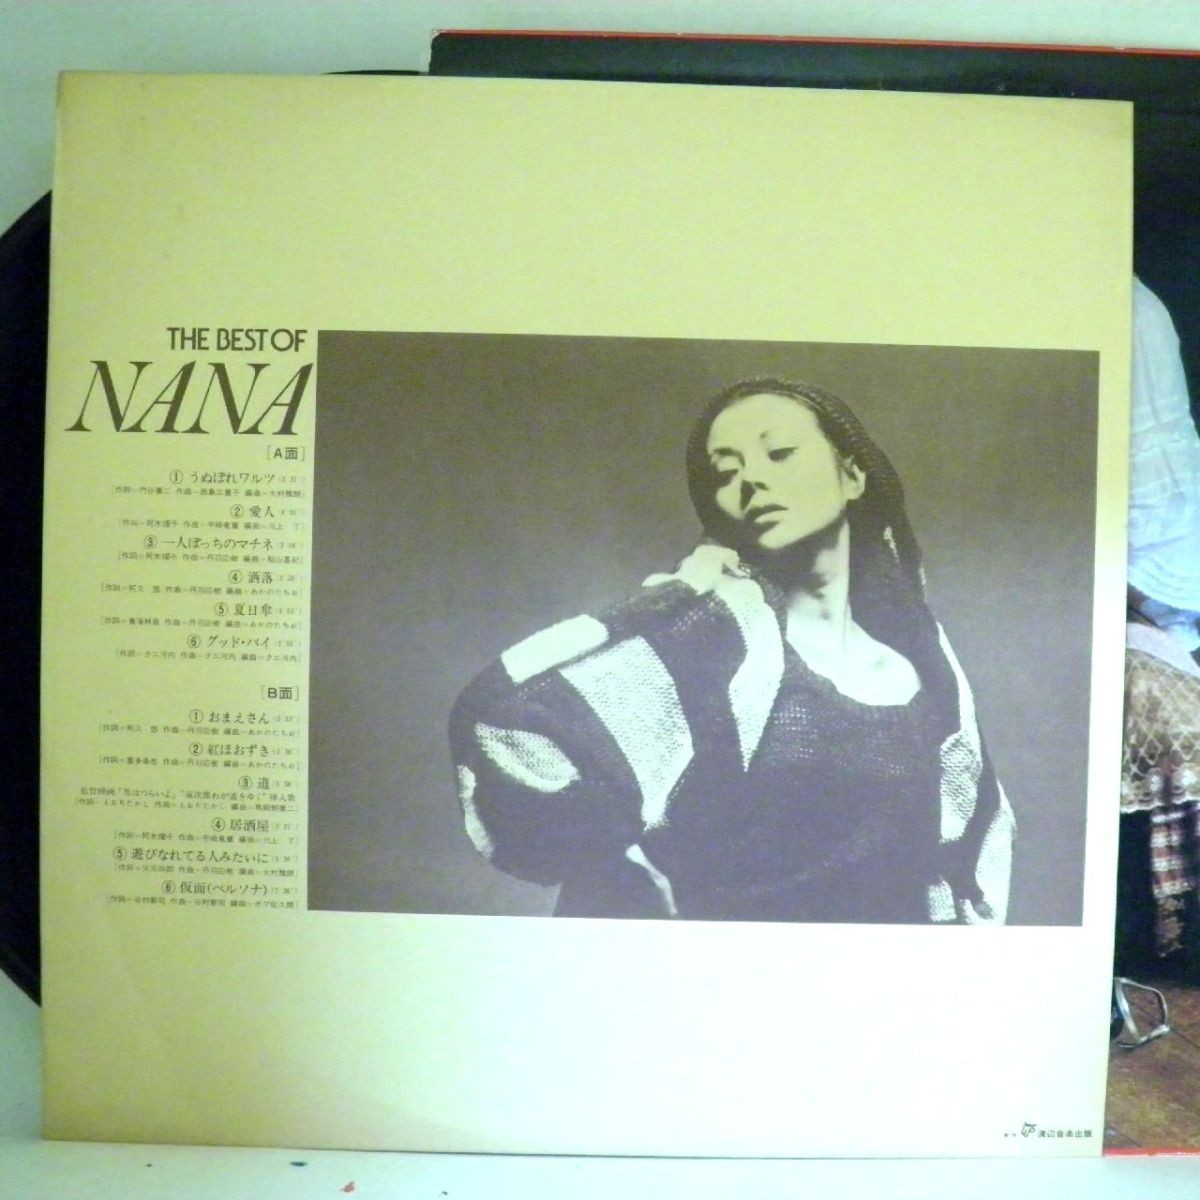 【検聴合格】1979年・美盤・非売品・見本盤・木の実ナナ 「THE BEST OF NANA」【LP】_画像6